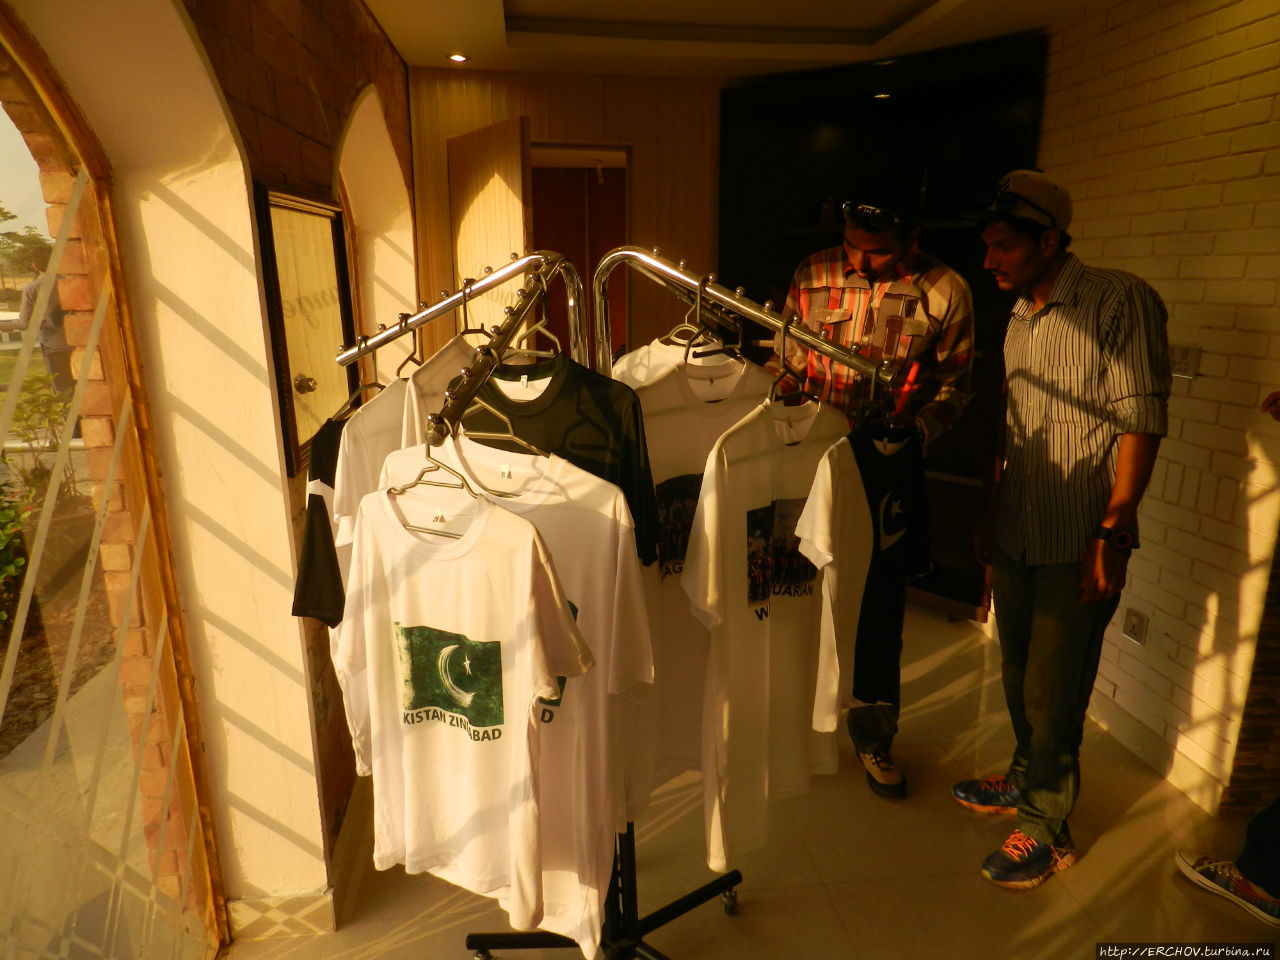 Пакистан. Ч — 8. Раздел Индии. Церемония закрытия границы Провинция Пенджаб, Пакистан